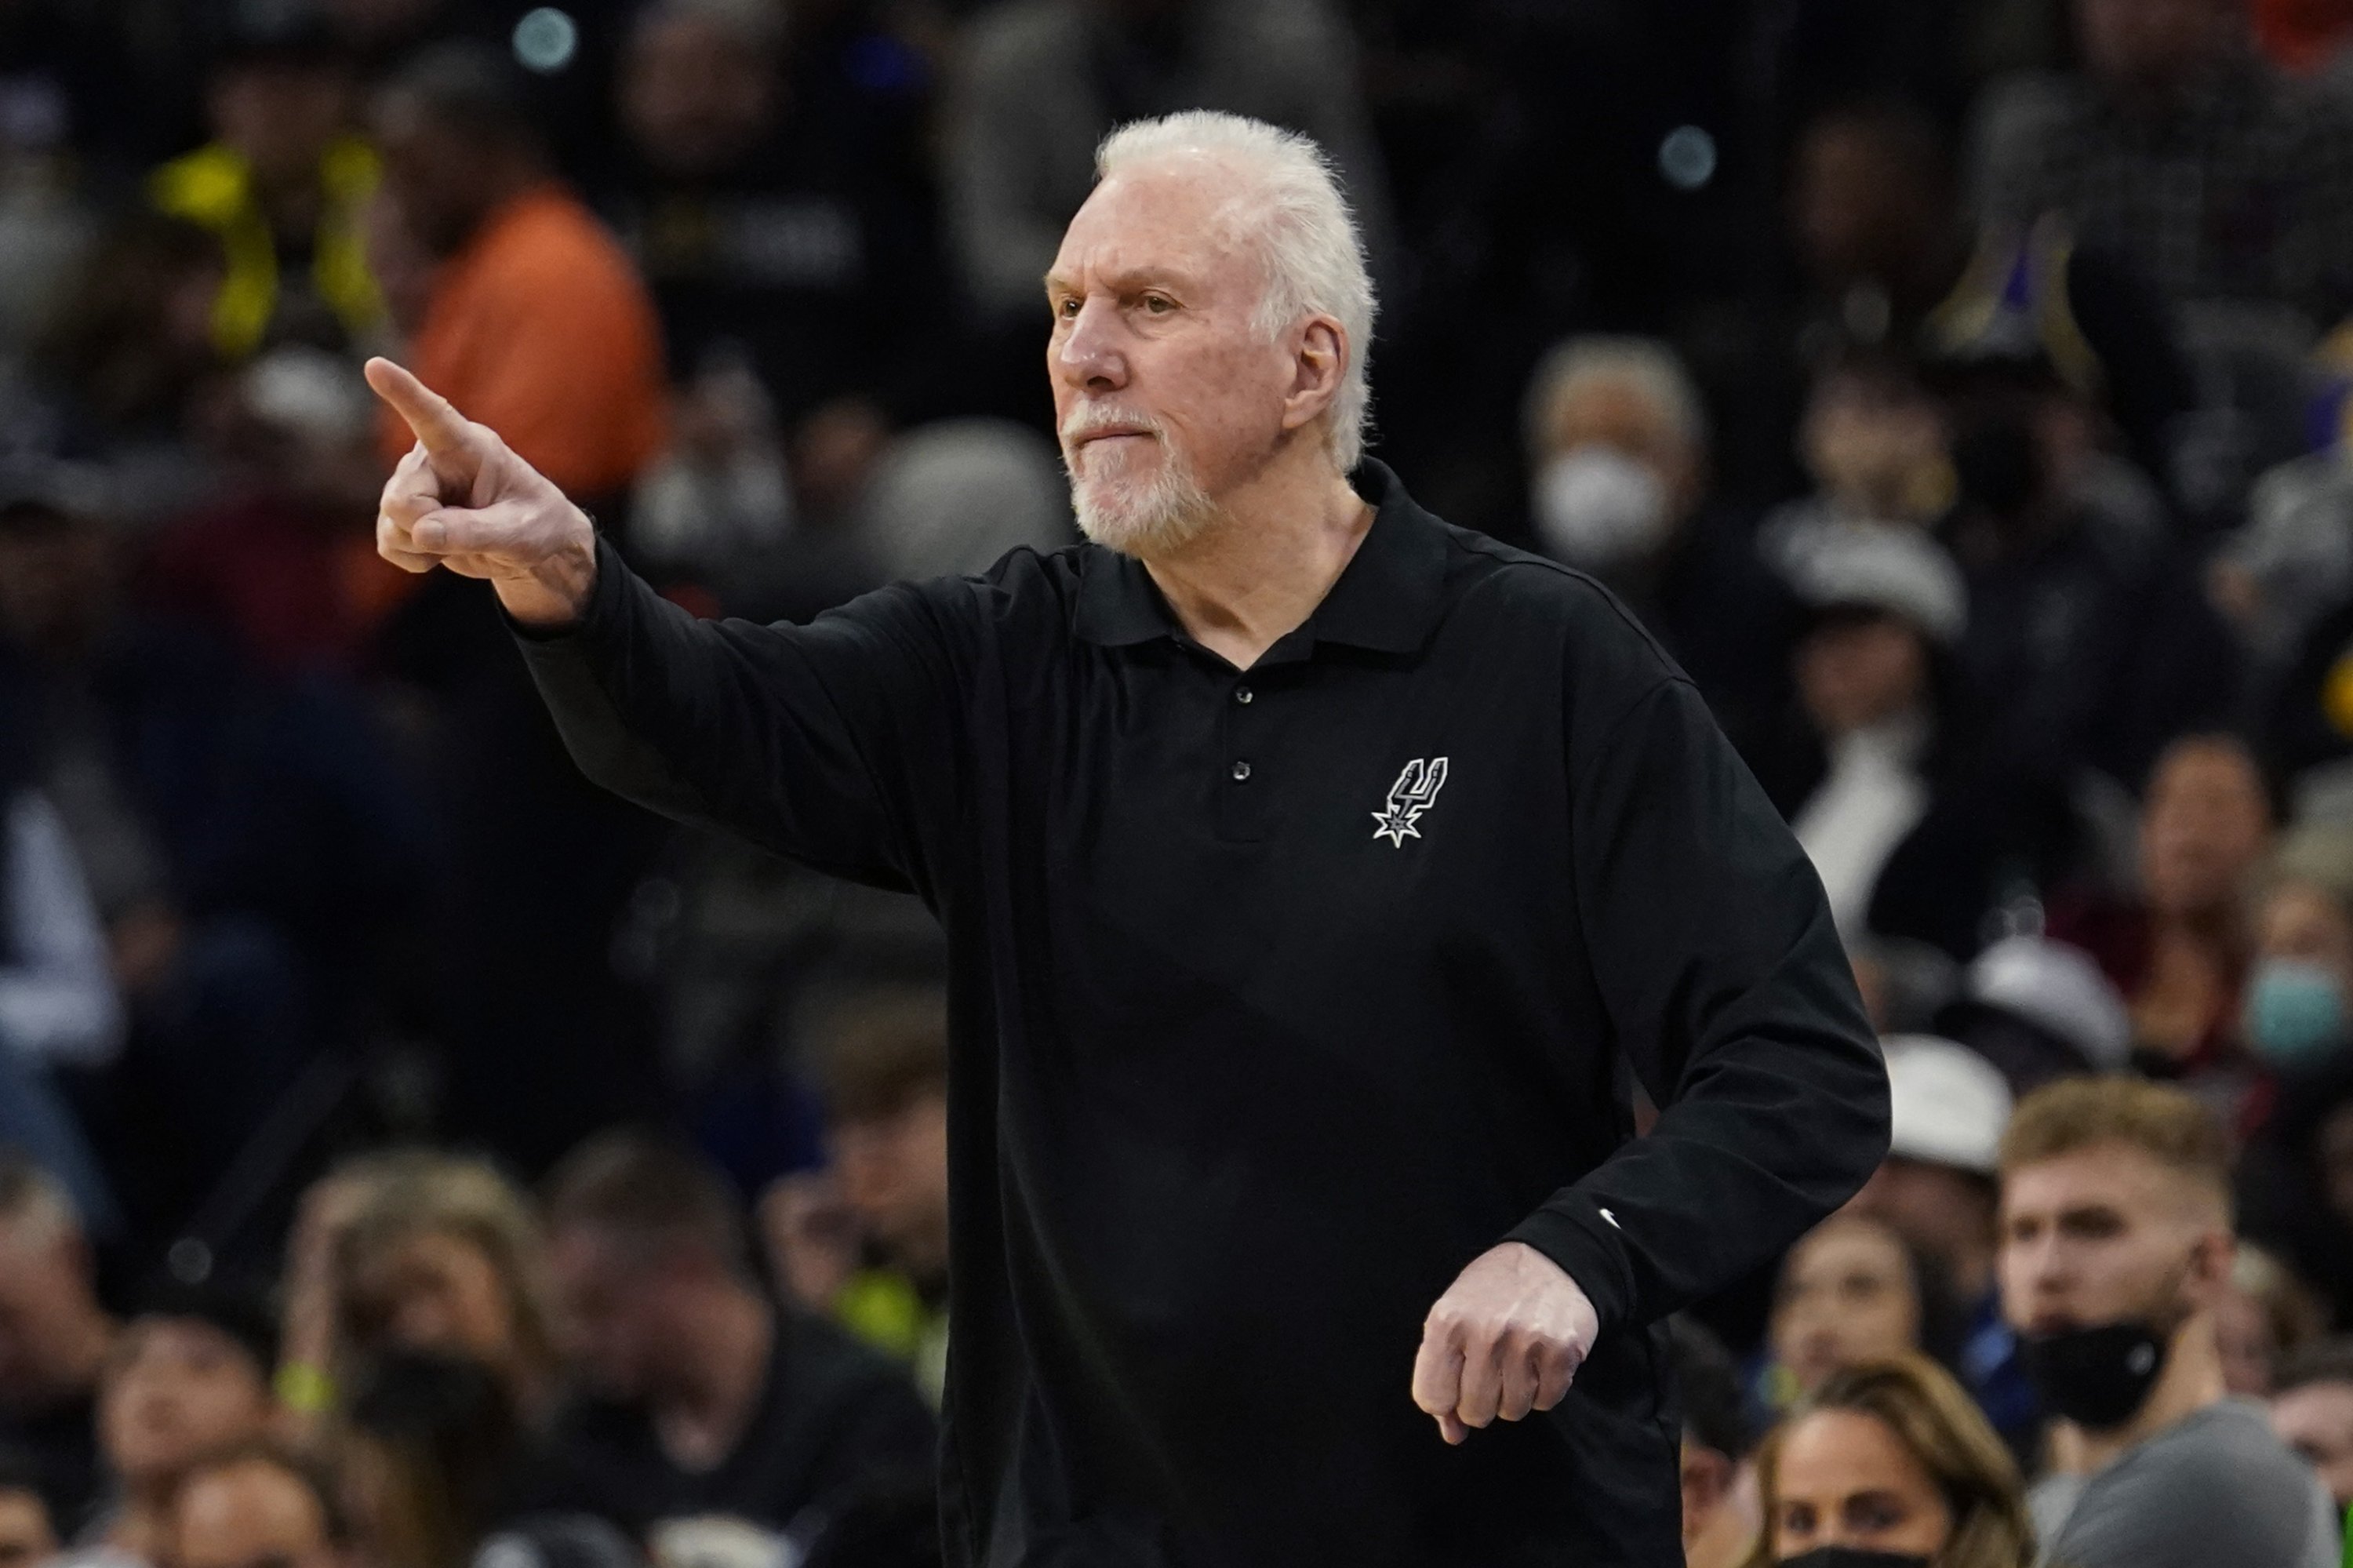 Pelatih kepala Spurs Gregg Popovich memberi isyarat kepada para pemainnya saat pertandingan NBA melawan Lakers, San Antonio, Texas, AS, 7 Maret 2022. (AP Photo)